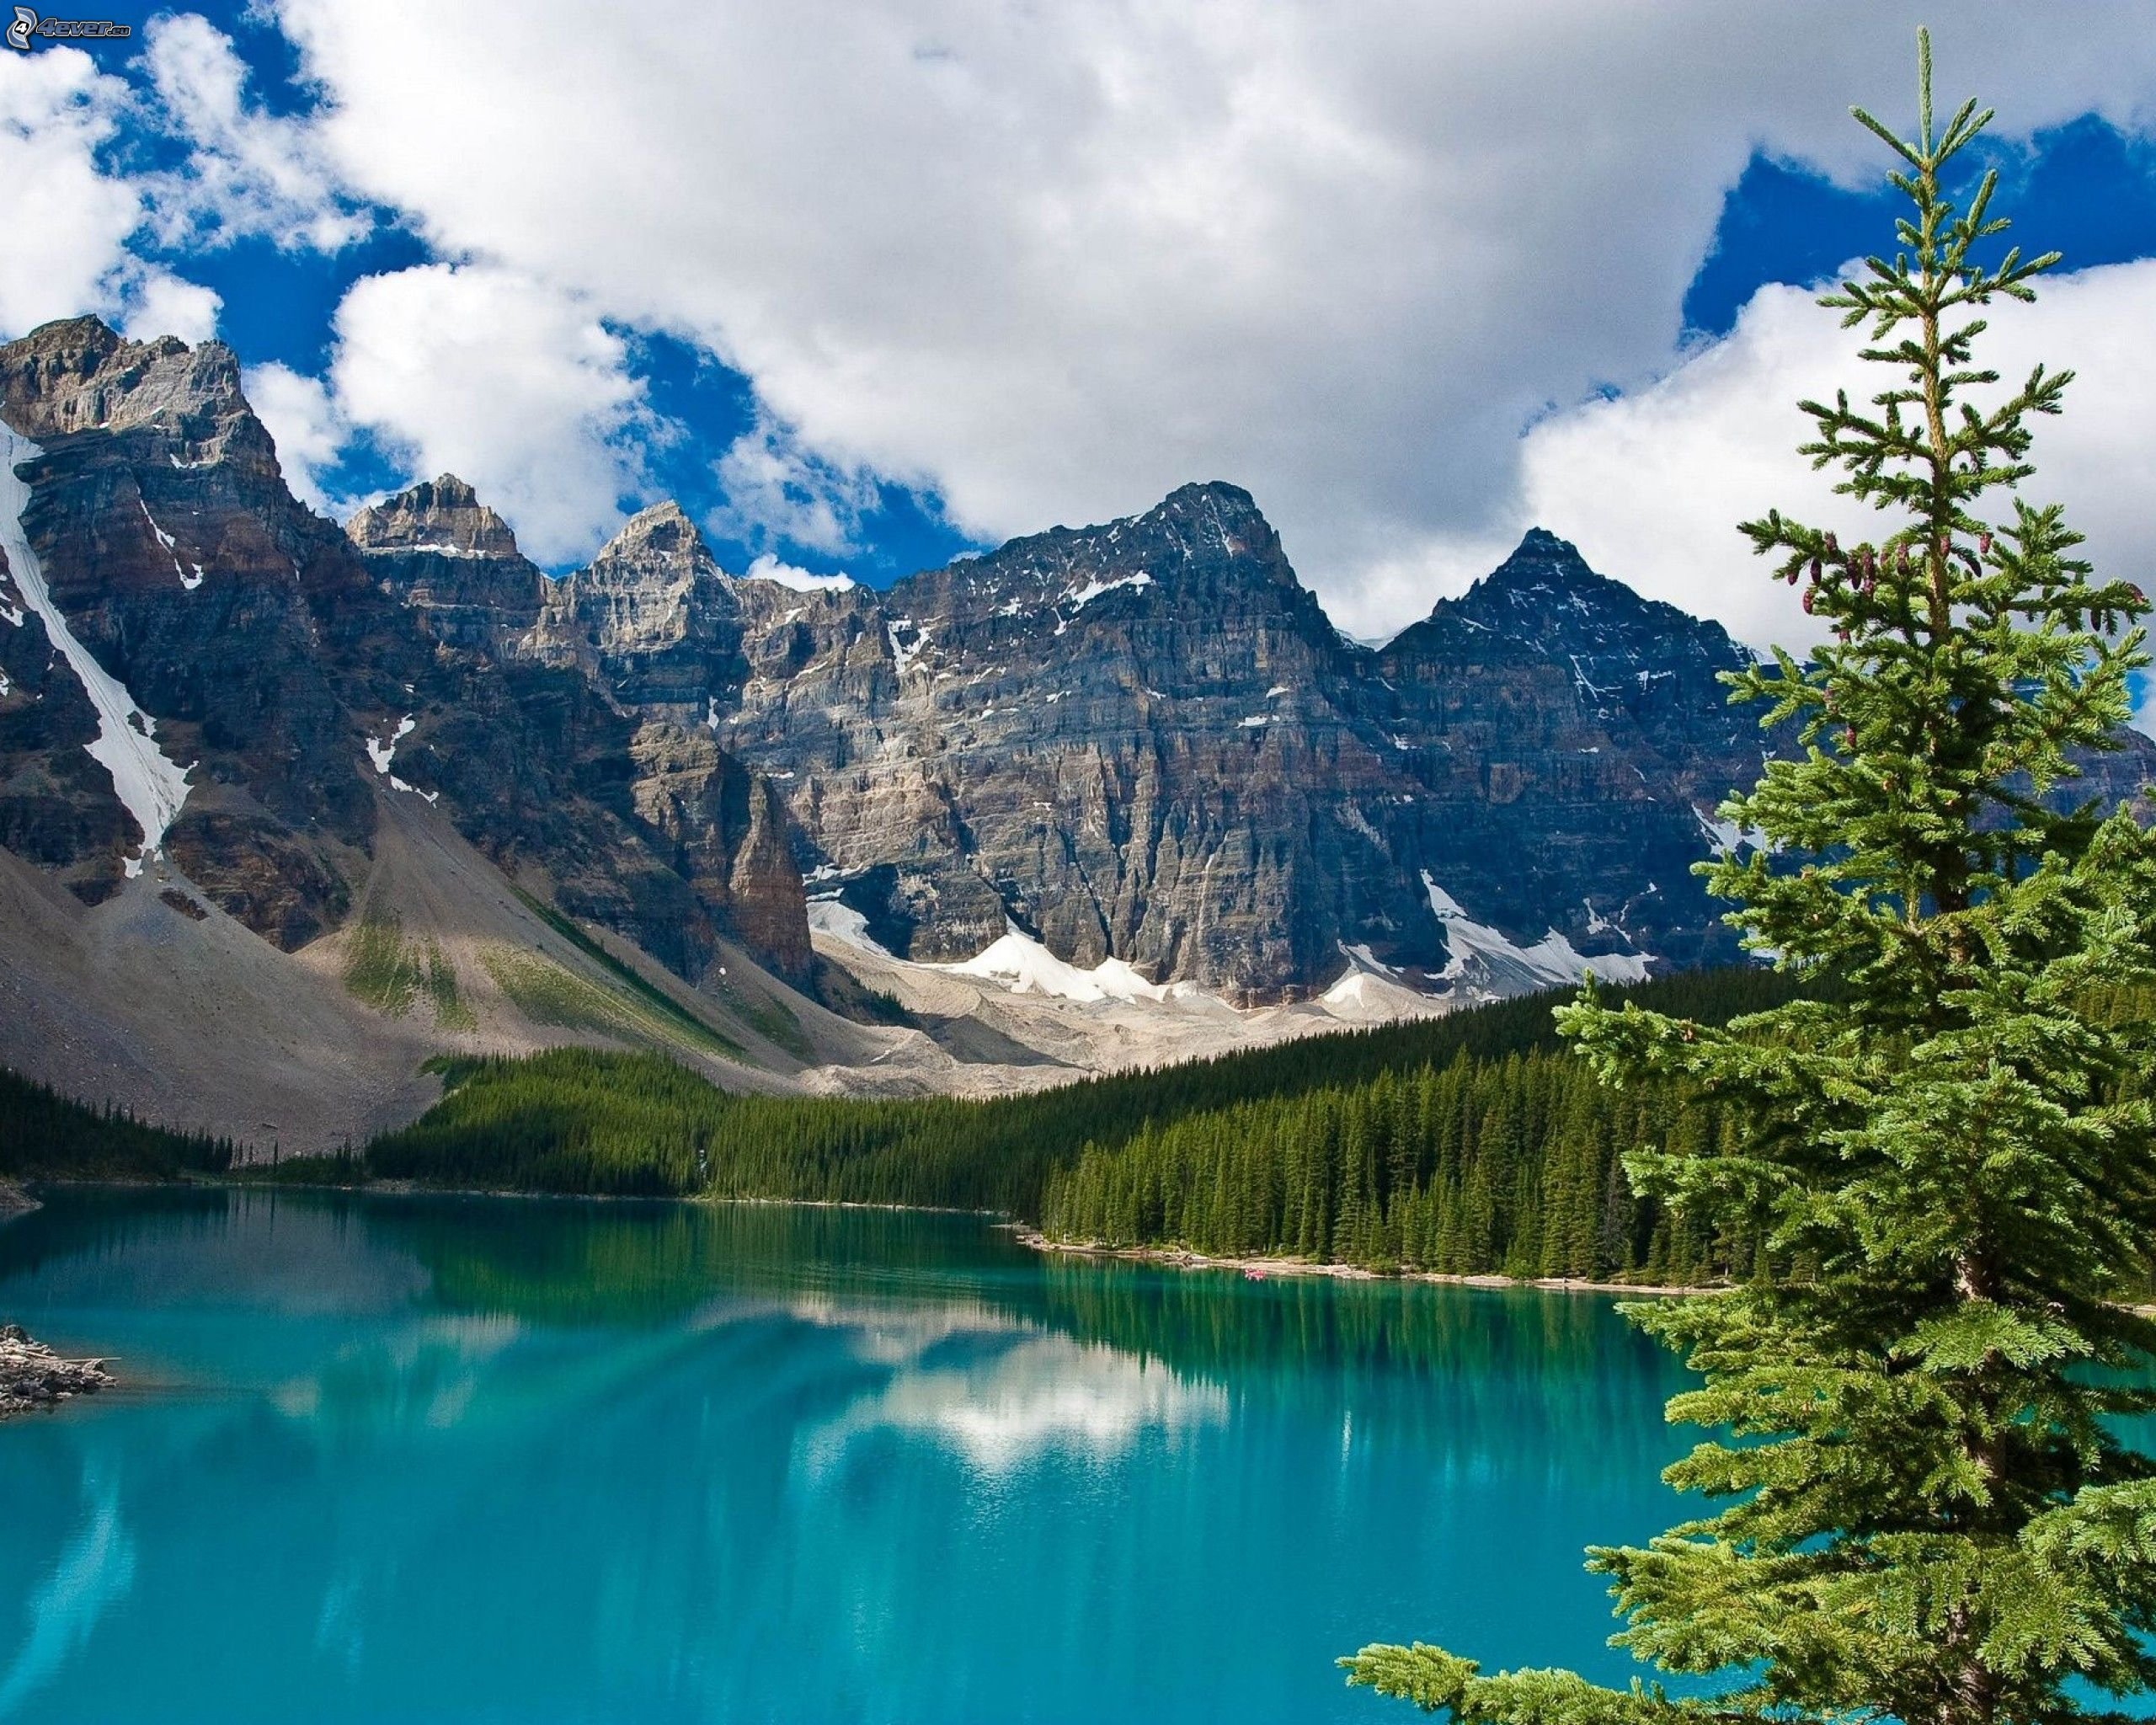 Обои на телефон самые красивые в мире. Озеро Морейн в Канаде. Гора Робсон, Канада. Горы озеро Луга Канада Банф. Горное озеро.